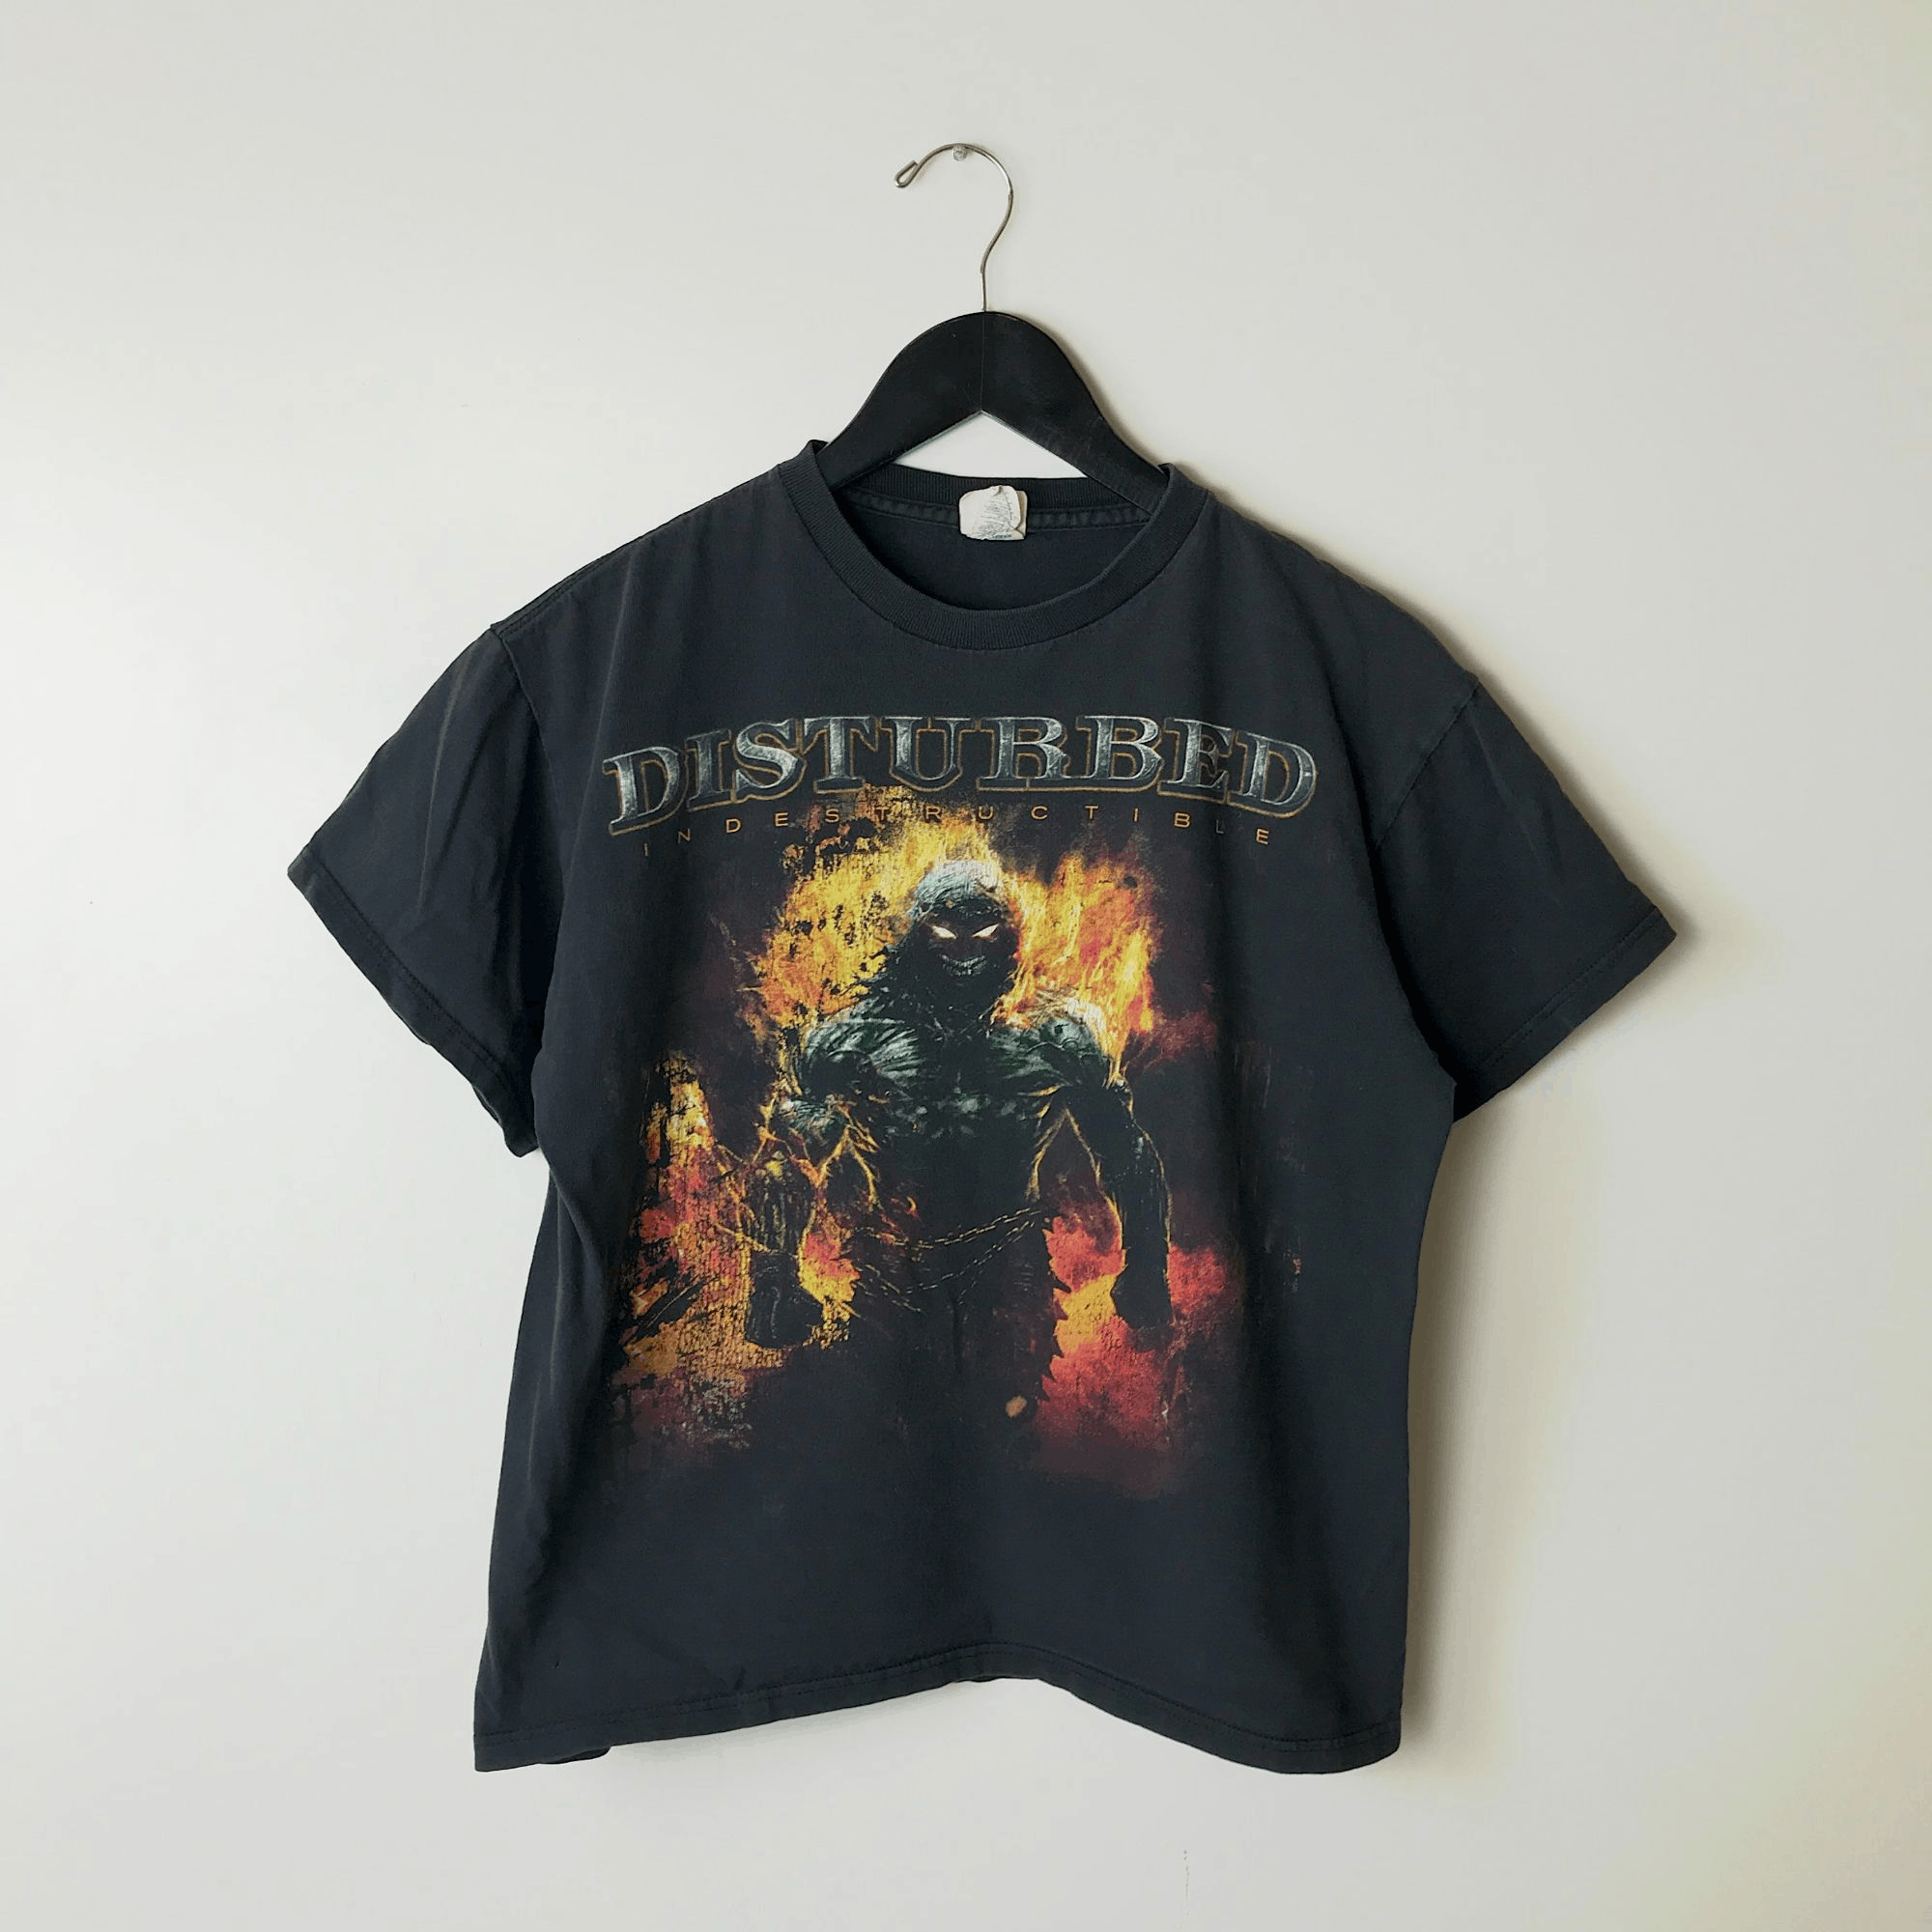 Delta 2009 Vintage Disturbed Indestructible Tour T Shirt 00s Adult Size US S / EU 44-46 / 1 - 10 Thumbnail